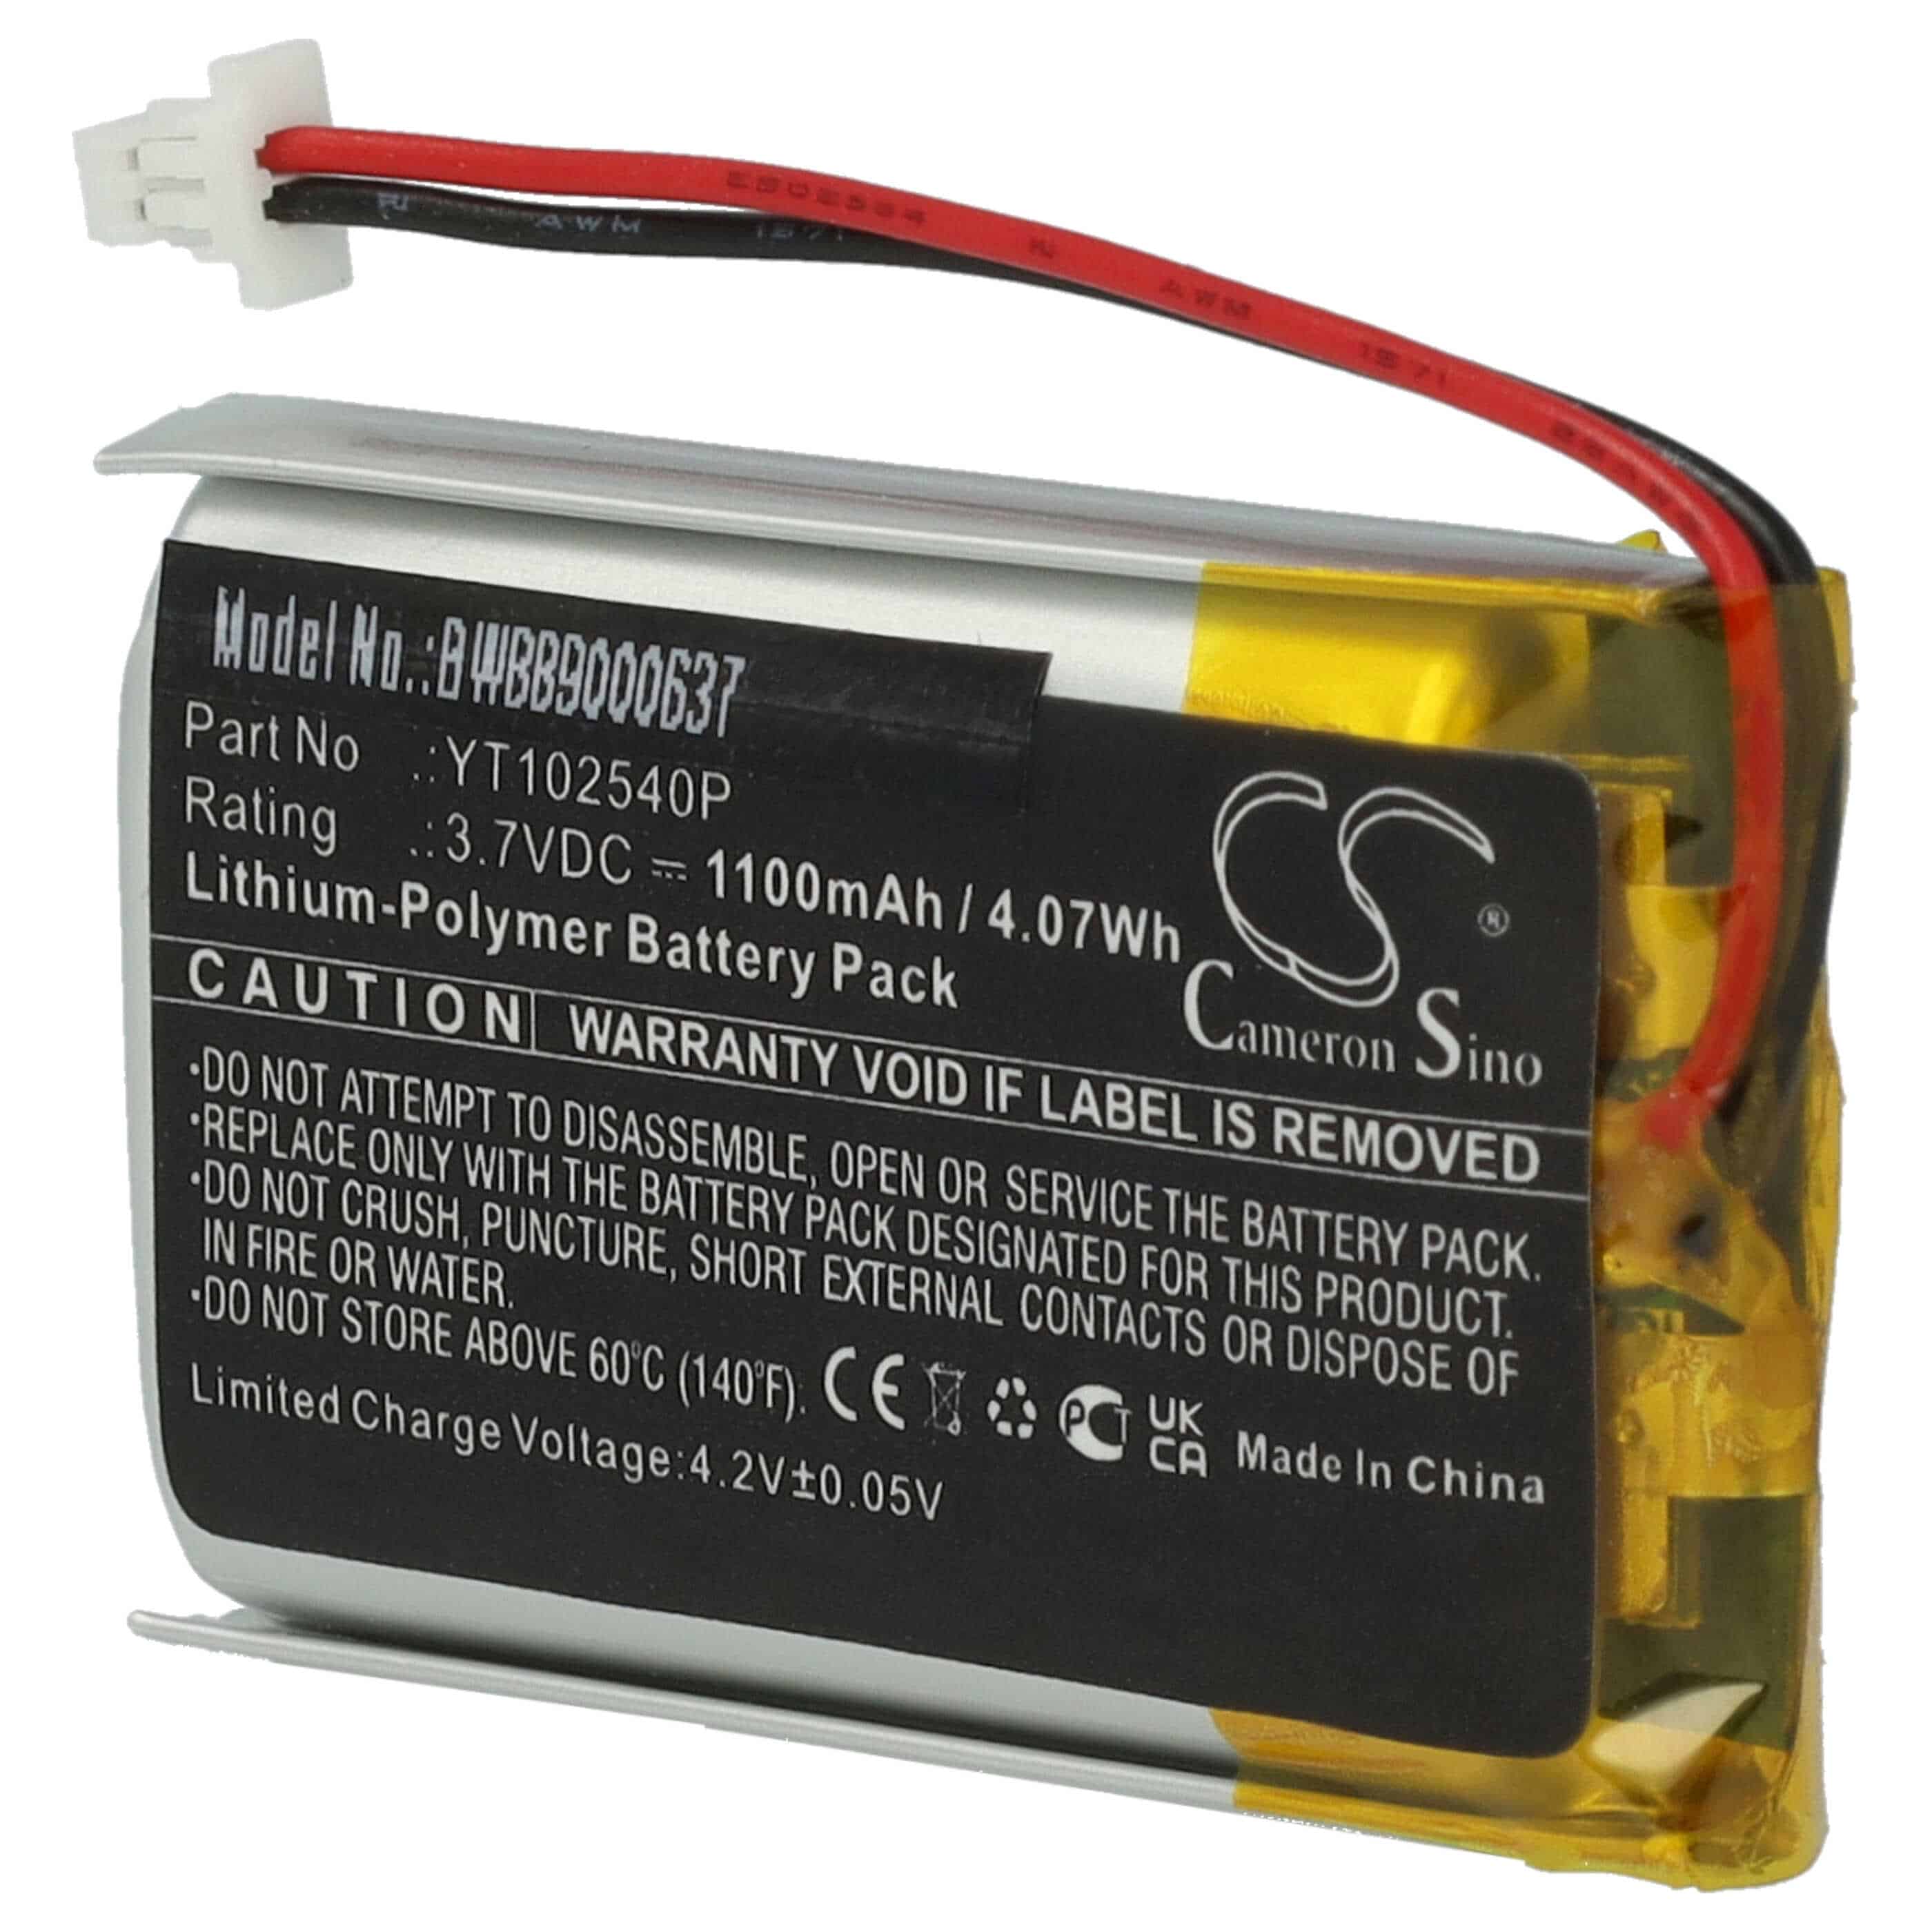 Batterie remplace Sena YT102540P pour casque audio - 1100mAh 3,7V Li-polymère